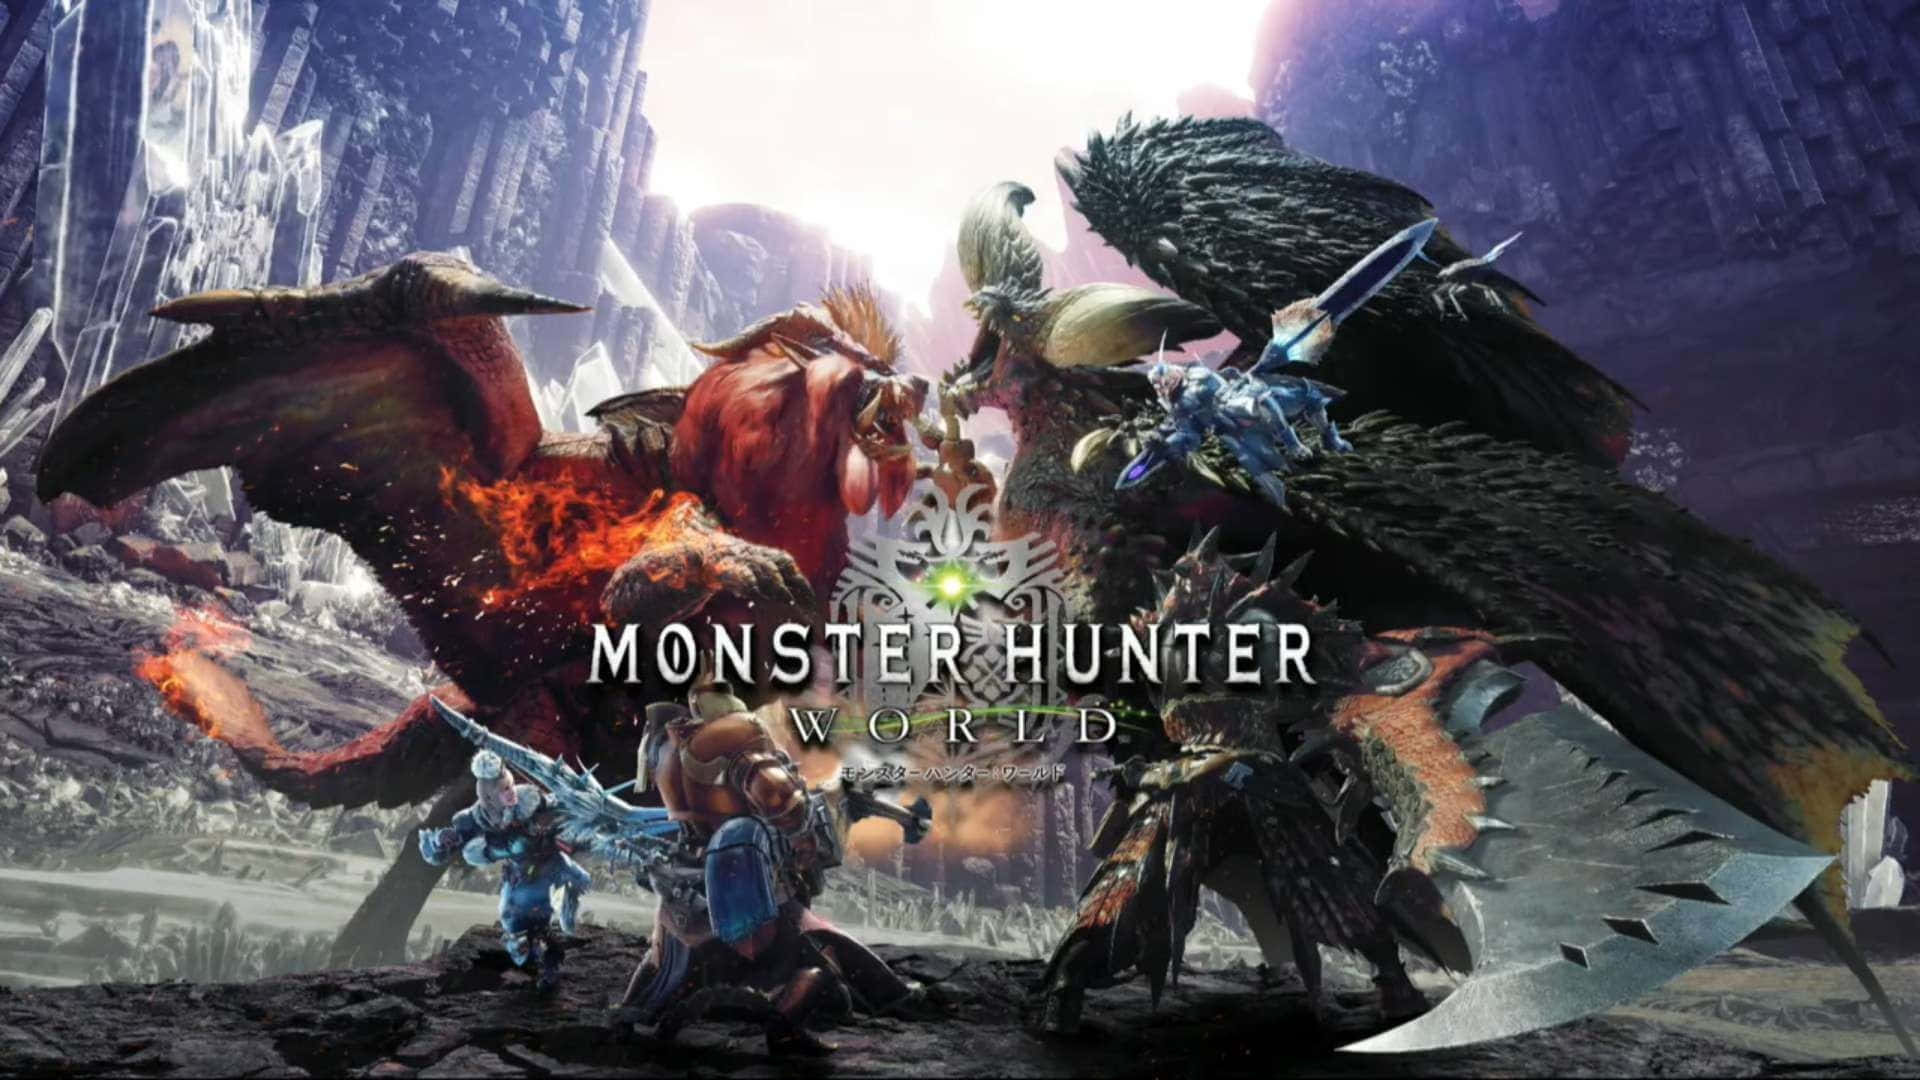 Cacciaai Mostri In Monster Hunter World